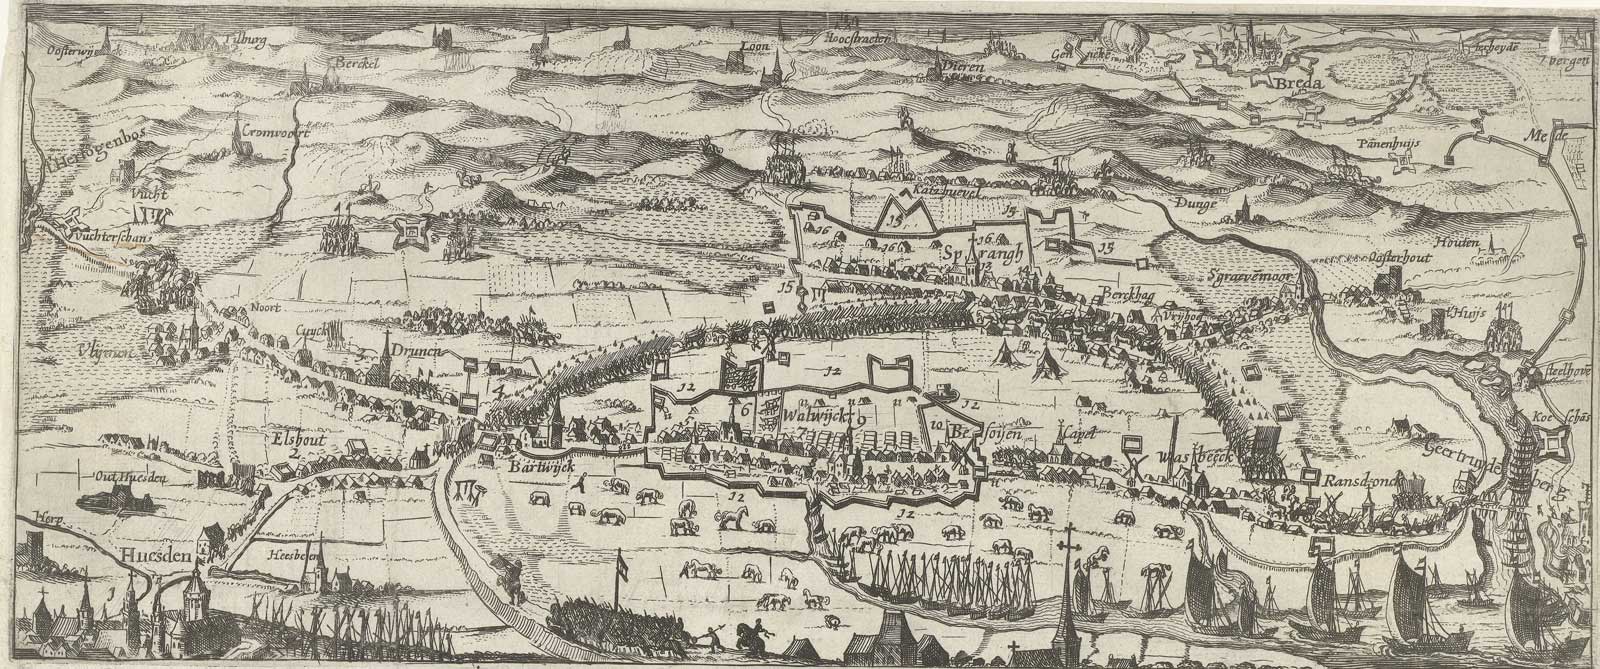 Het leger inde Lange-straet, 1625 (bron: Rijksmuseum RP-P-OB-81.105. Publiek domein)